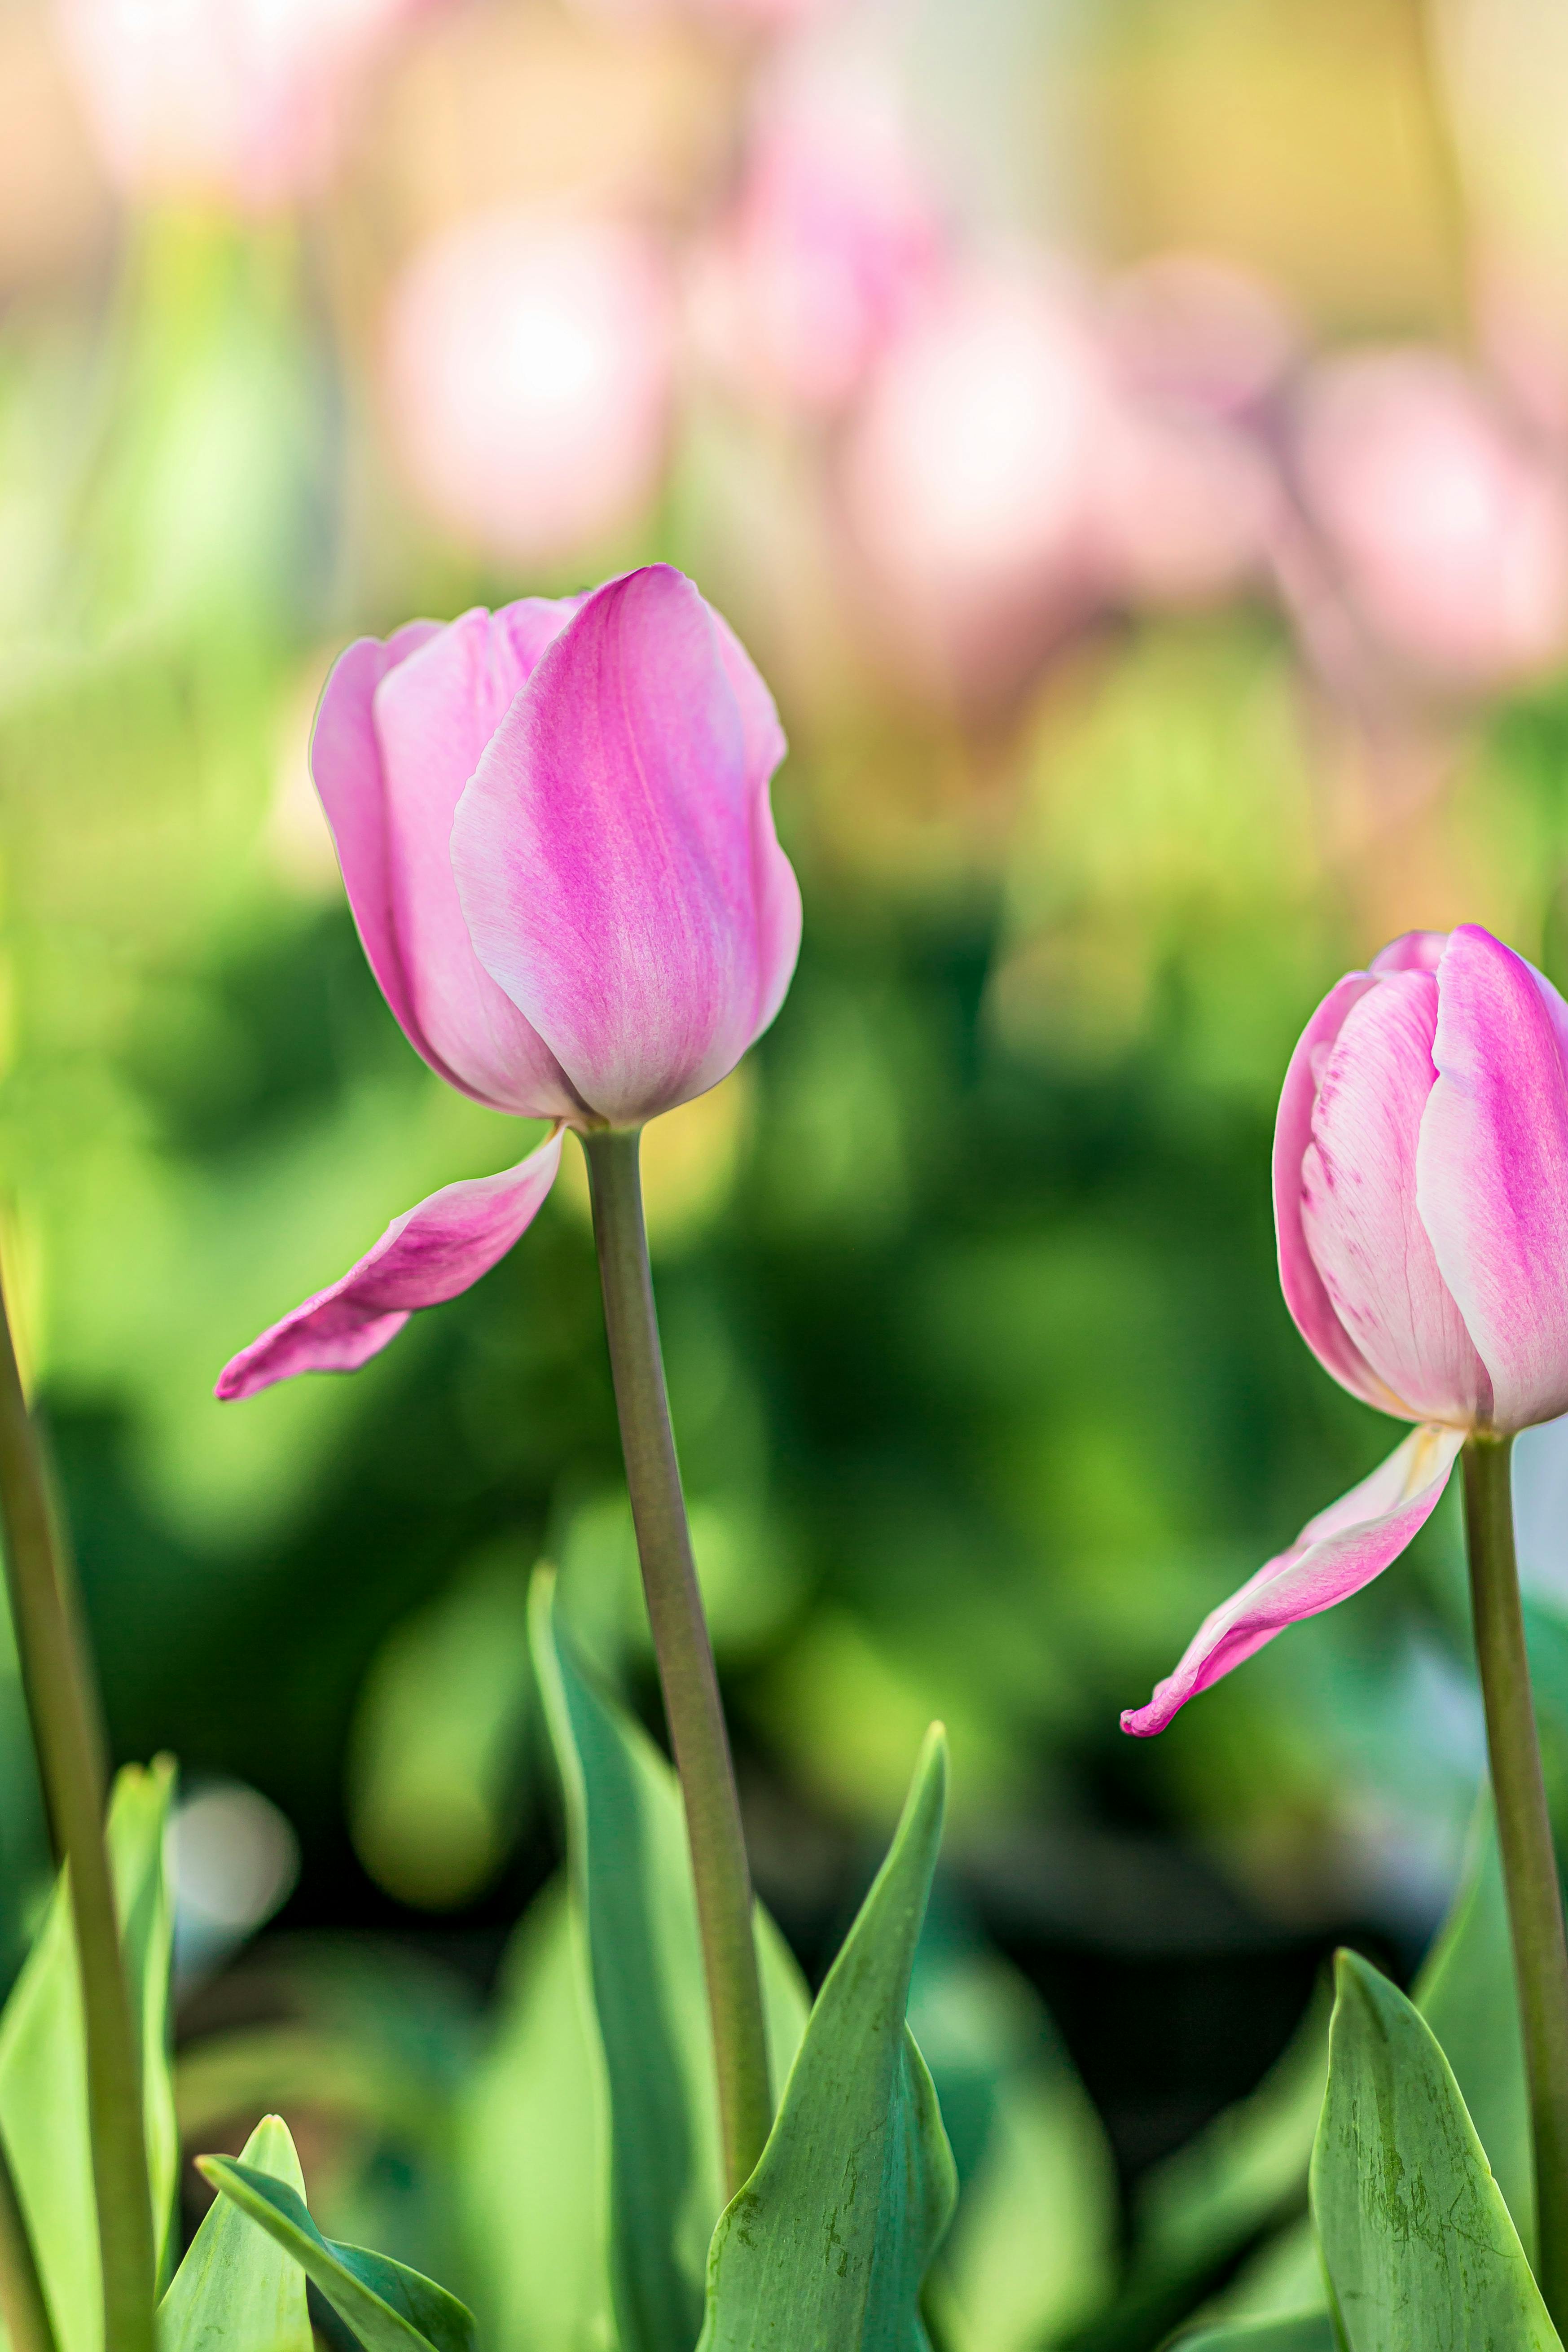 Cùng lạc vào thế giới màu hồng tươi tắn của những bông hoa tulip xinh đẹp và thưởng thức chúng từ góc nhìn gần nhất. Bức ảnh close up này sẽ khiến bạn say đắm vào vẻ đẹp tinh khôi, gợi cảm của hoa tulip mỗi khi nhìn vào nó.